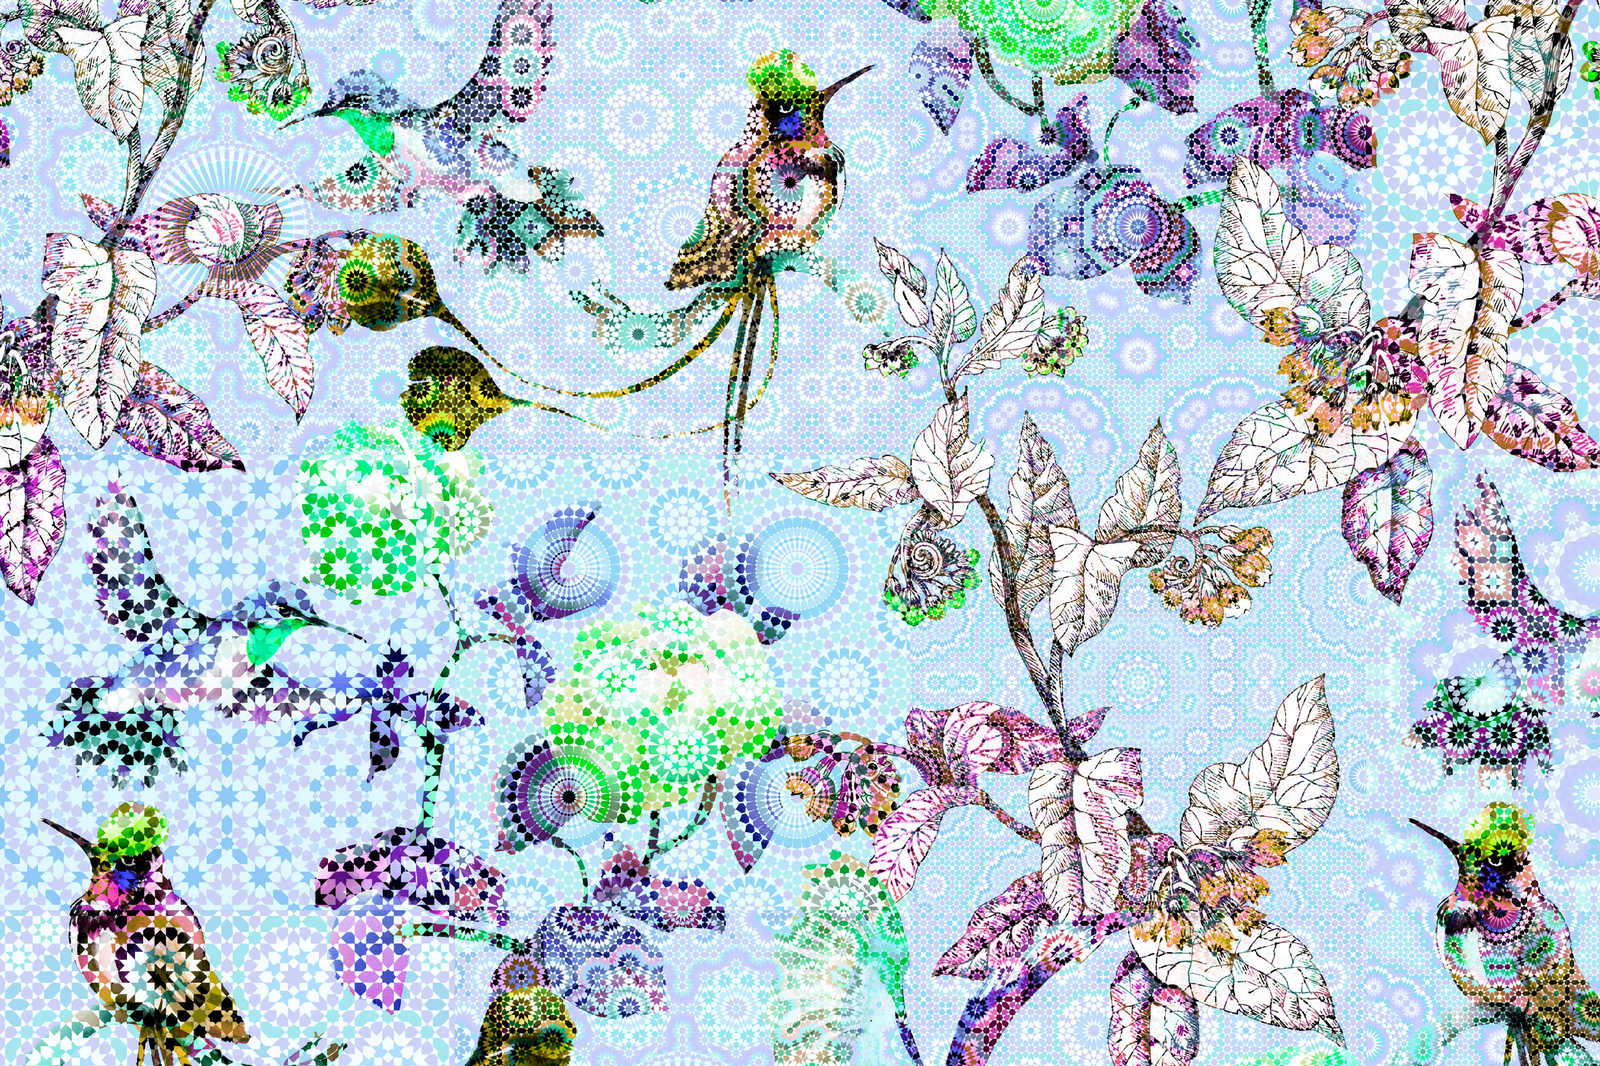             Tableau toile Fleurs & oiseaux style mosaïque - 0,90 m x 0,60 m
        